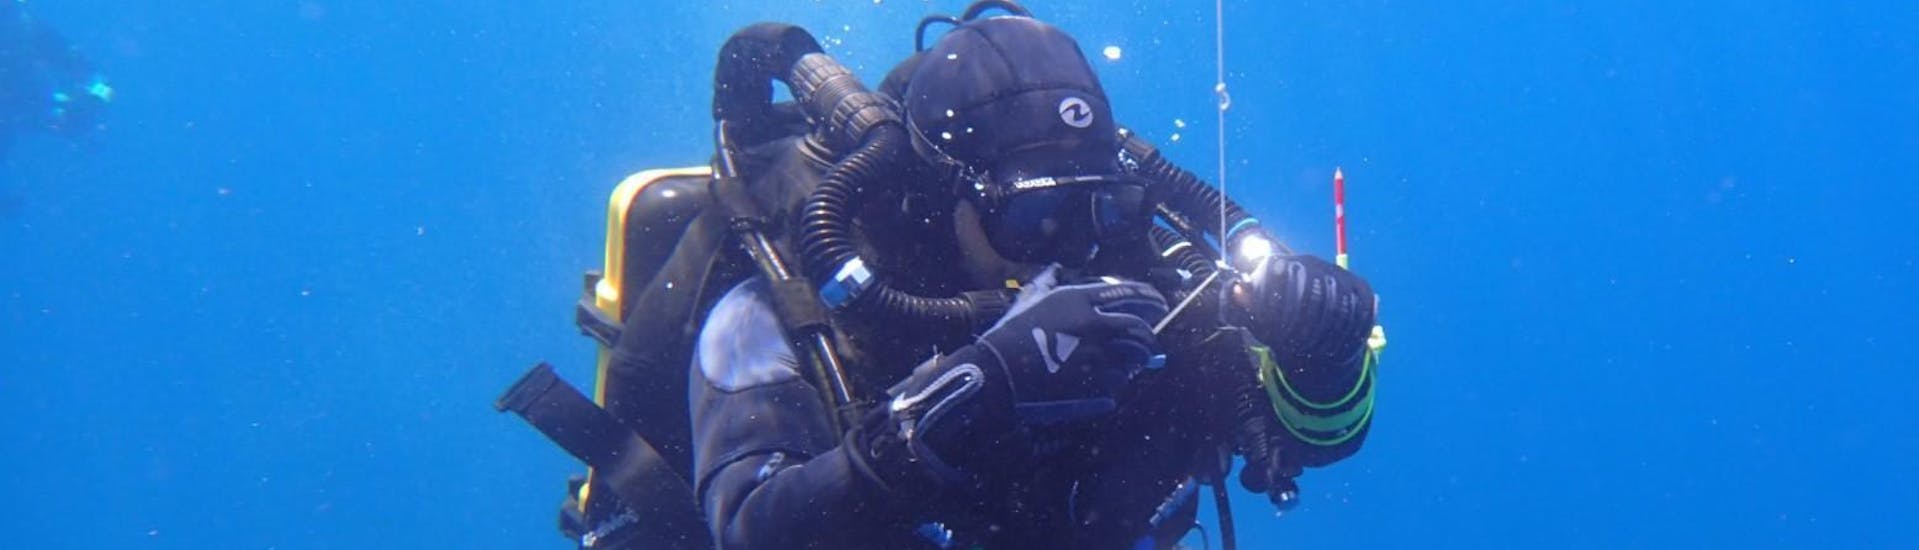 Corso di immersione CMAS** a Tučepi per subacquei certificati.